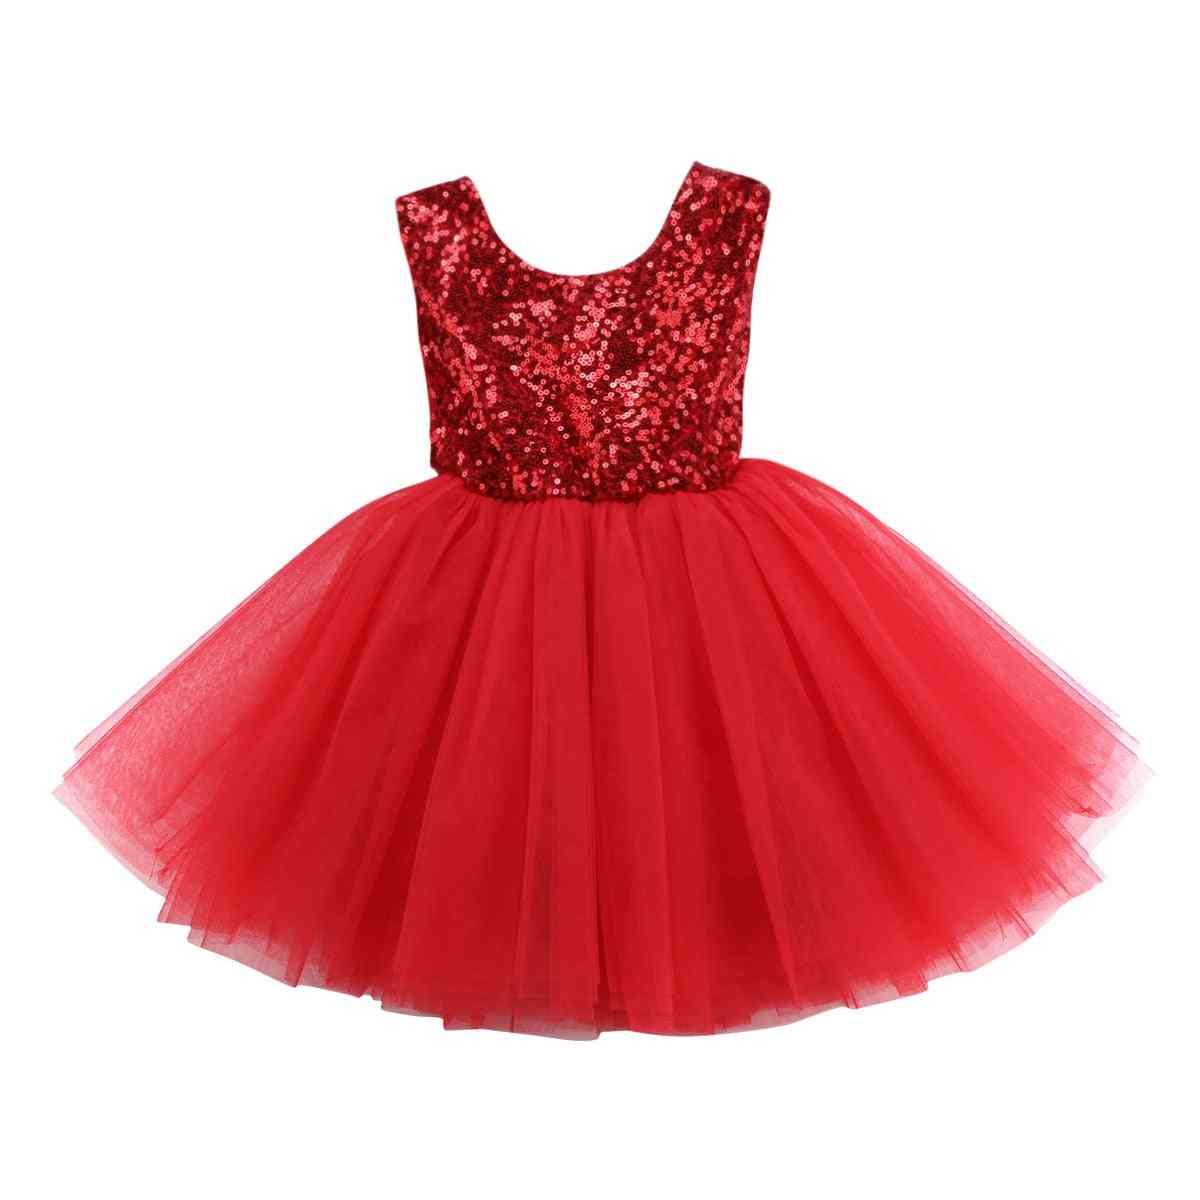 שמלת נסיכת כלה מפוארת לתינוקות ללא שרוולים מסיבת יום הולדת שמלת טבילה לילדה שמלות קיץ